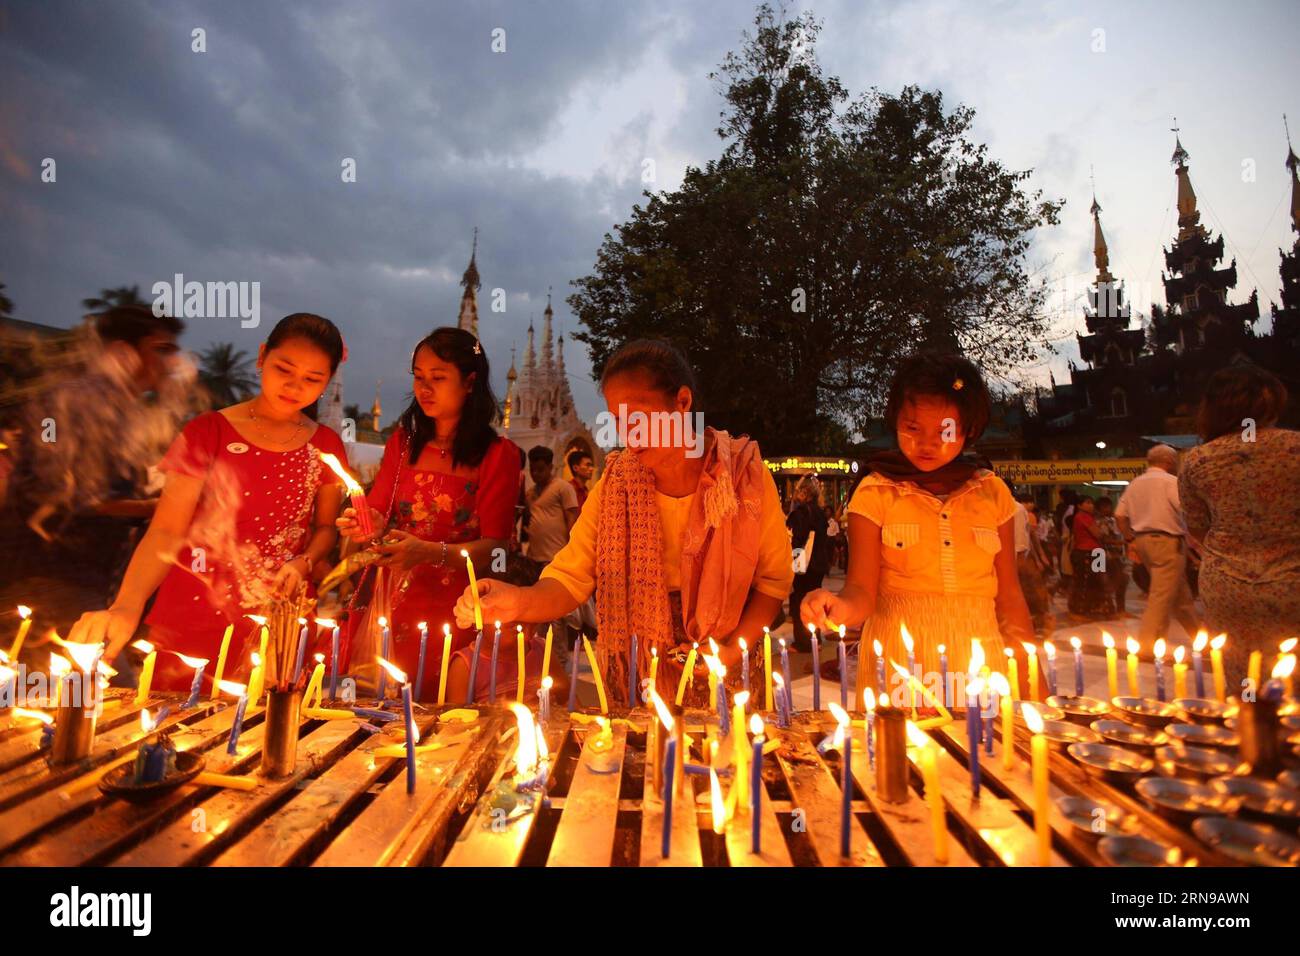 Die Menschen zünden Kerzen auf Myanmars traditionellem Tazaungdaing-Festival in der Shwedagon-Pagode in Yangon, Myanmar, 26. November 2015. Das Tazaungdaing Festival, auch bekannt als das Festival der Lichter, das im achten Monat des traditionellen myanmarischen Kalenders auf den Vollmondtag fällt, wird als Nationalfeiertag in Myanmar gefeiert und markiert das Ende der Regenzeit. ) MYANMAR-YANGON-TAZAUNGDAING FESTIVAL UxAung PUBLICATIONxNOTxINxCHN Celebrities Lichte Kerzen AUF Myanmar traditionelles Tazaungdaing Festival in der Shwedagon Pagoda in Yangon Myanmar Nov 26 2015 das Tazaungdaing Festival so k Stockfoto